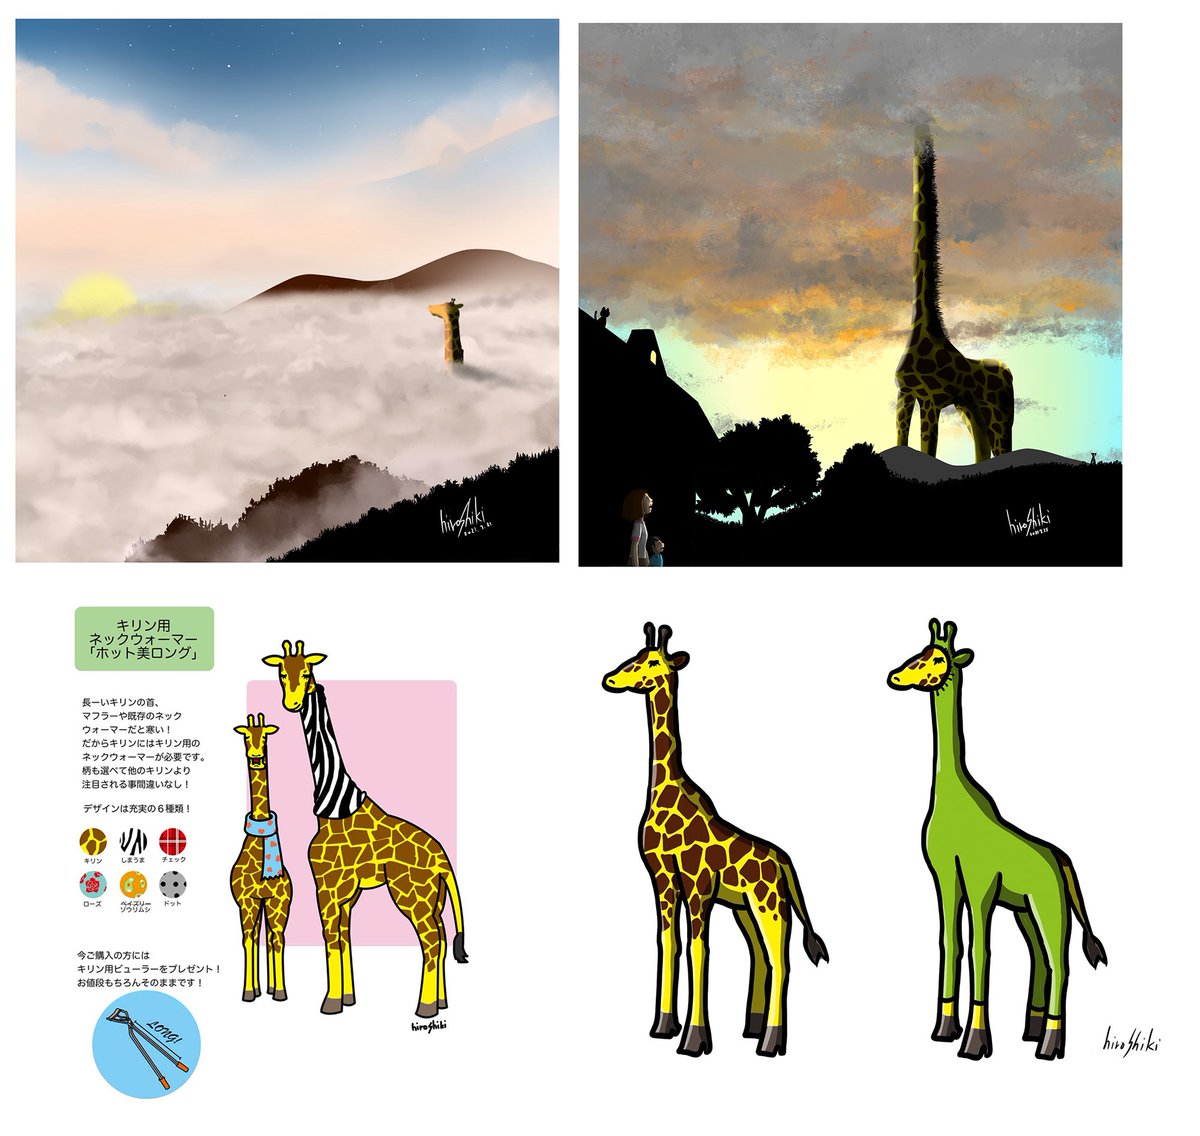 キリン!キリン!キリンのイラスト。
ネタを考える時、キリンがスタートになる事が多いです。
#イラスト #illustration #キリン #giraffe 